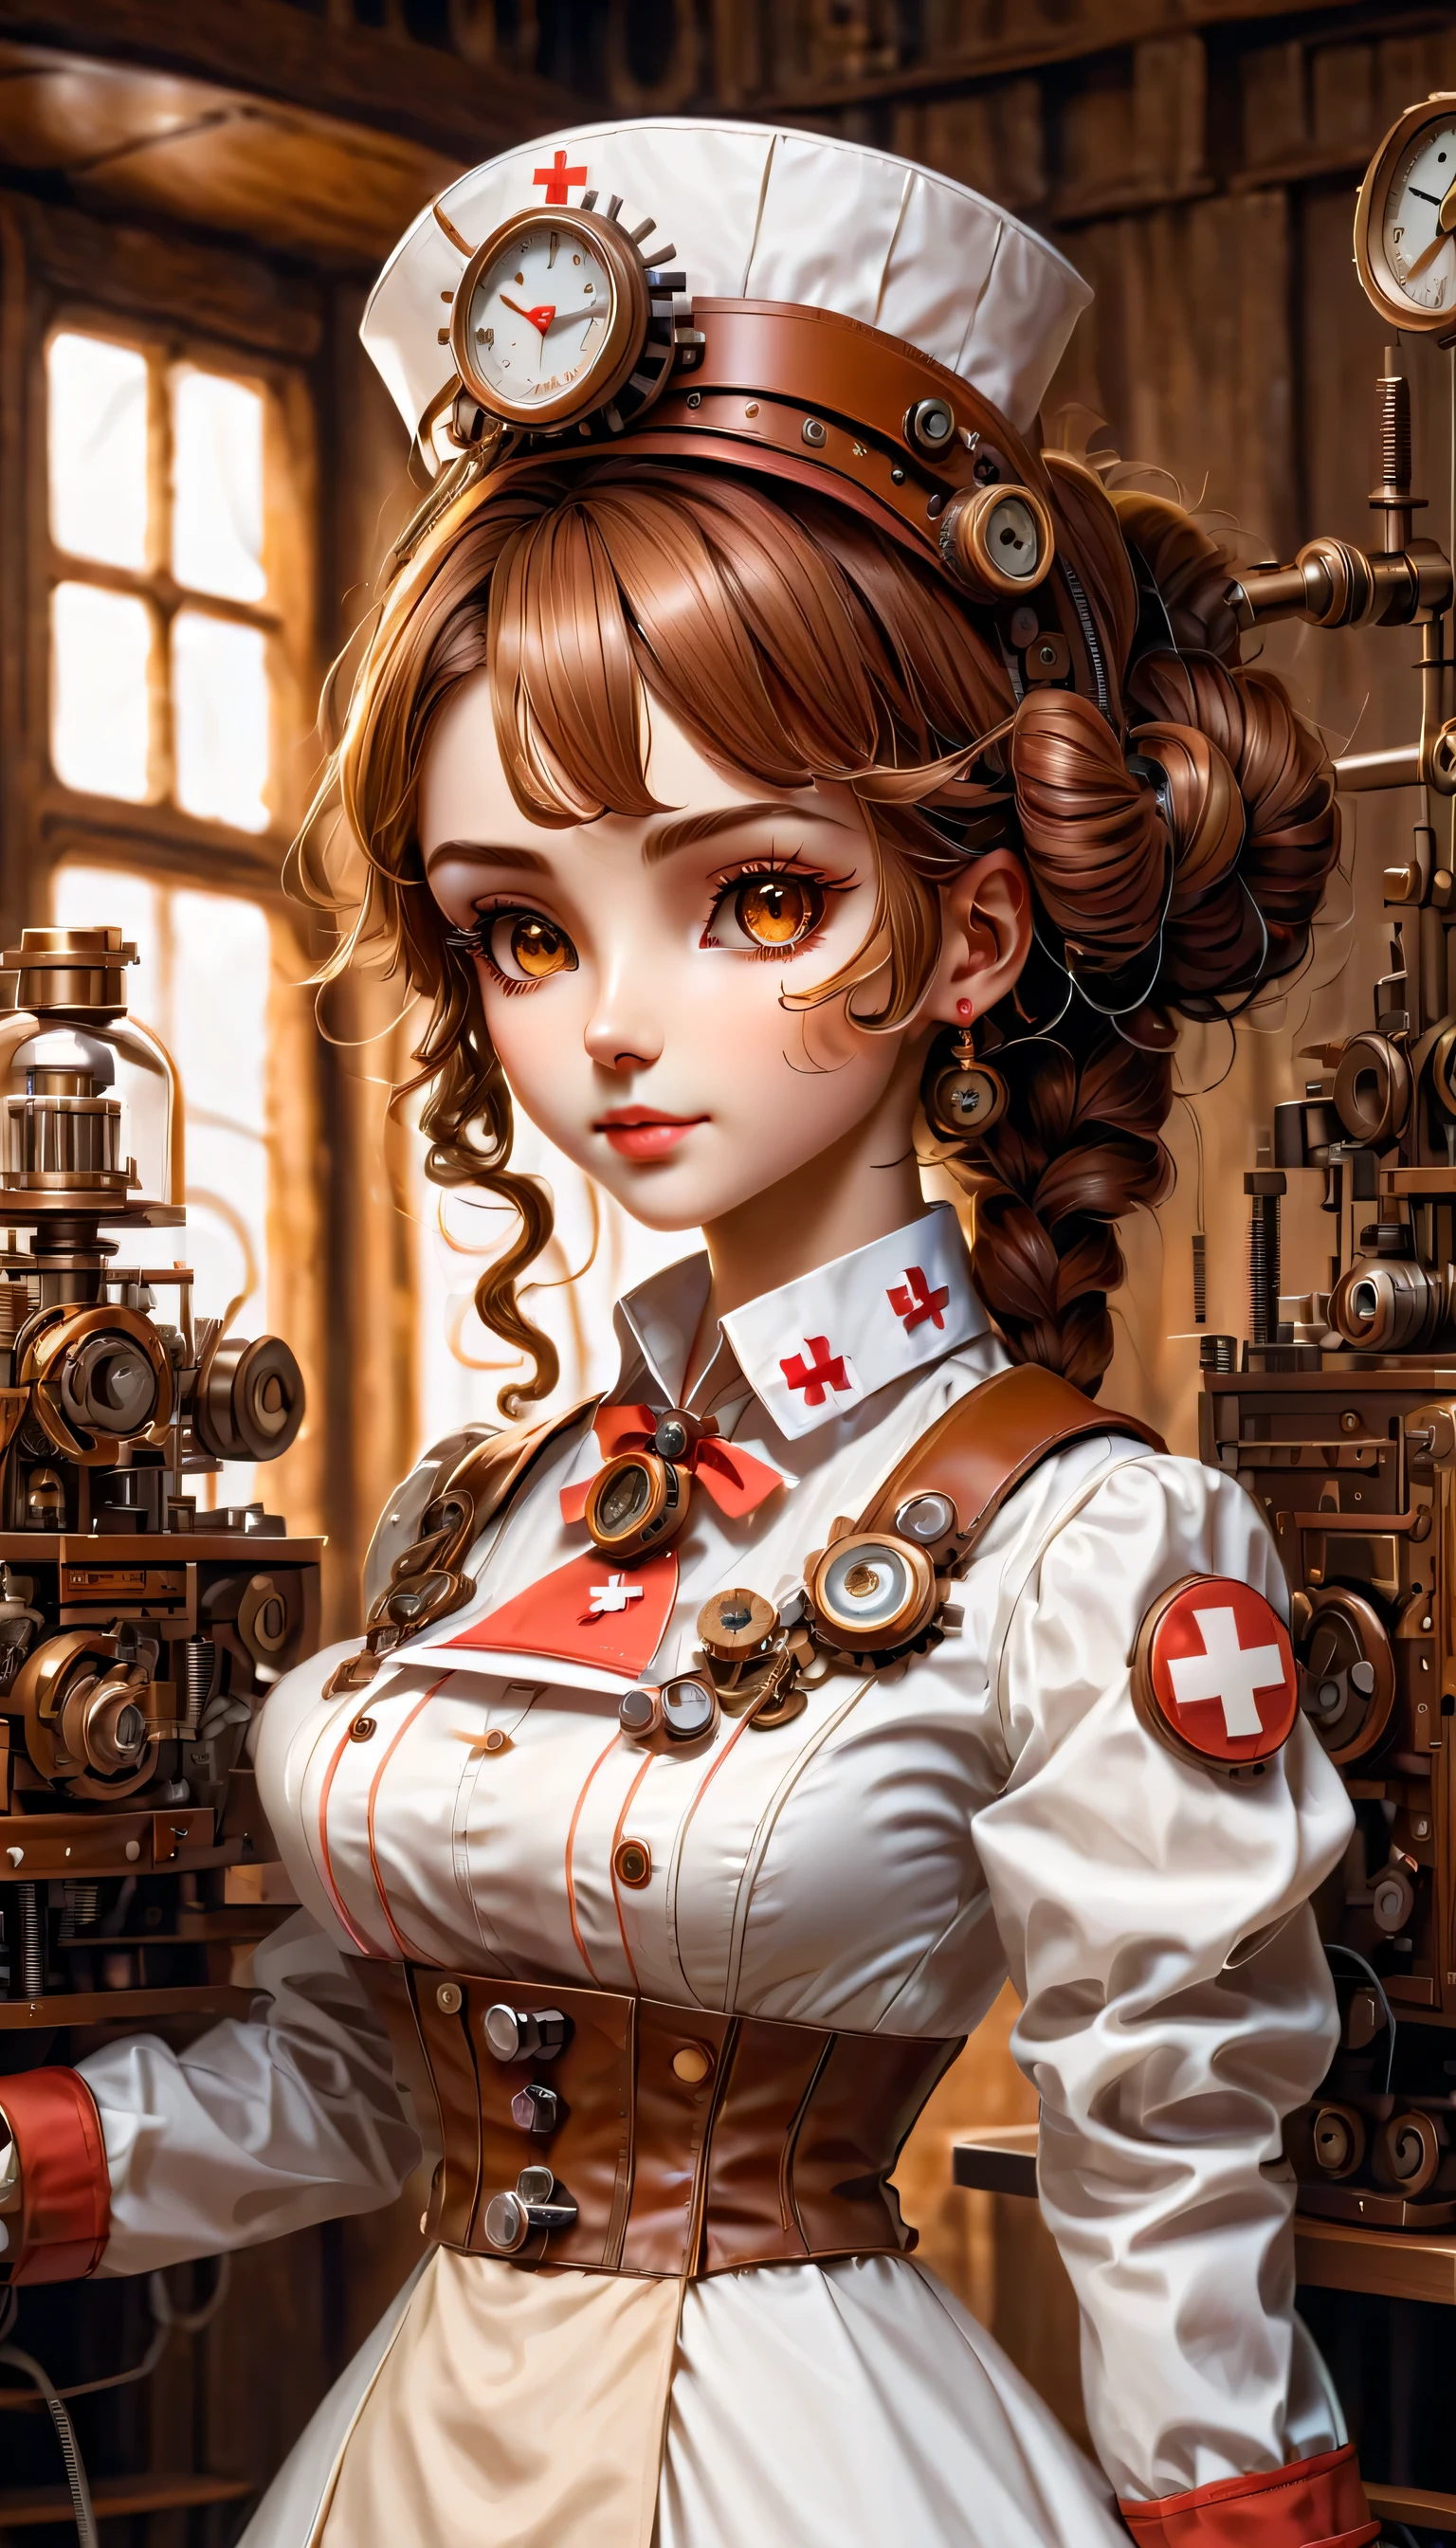 机制:人形生物:護士:16th century European 護士 uniform:全身,娃娃臉:完美的臉:棕色的大眼睛,睫毛,隱藏髮絲,她是由機器製成的,蒸汽朋克元素,机械的 engineering,机械的ly,机械的,流行音樂,可愛的,錯綜複雜的細節,很好,高解析度,高品質,最高品質,清楚地,清楚,美麗的光影,三个维度,可愛的外表,複雜的配置,机制,動態的,忙碌的,努力工作,讓人想要支持的表達方式,醫用器材,醫療用品貨架,小瓶,提出證據證明它是一台機器,窗外的光